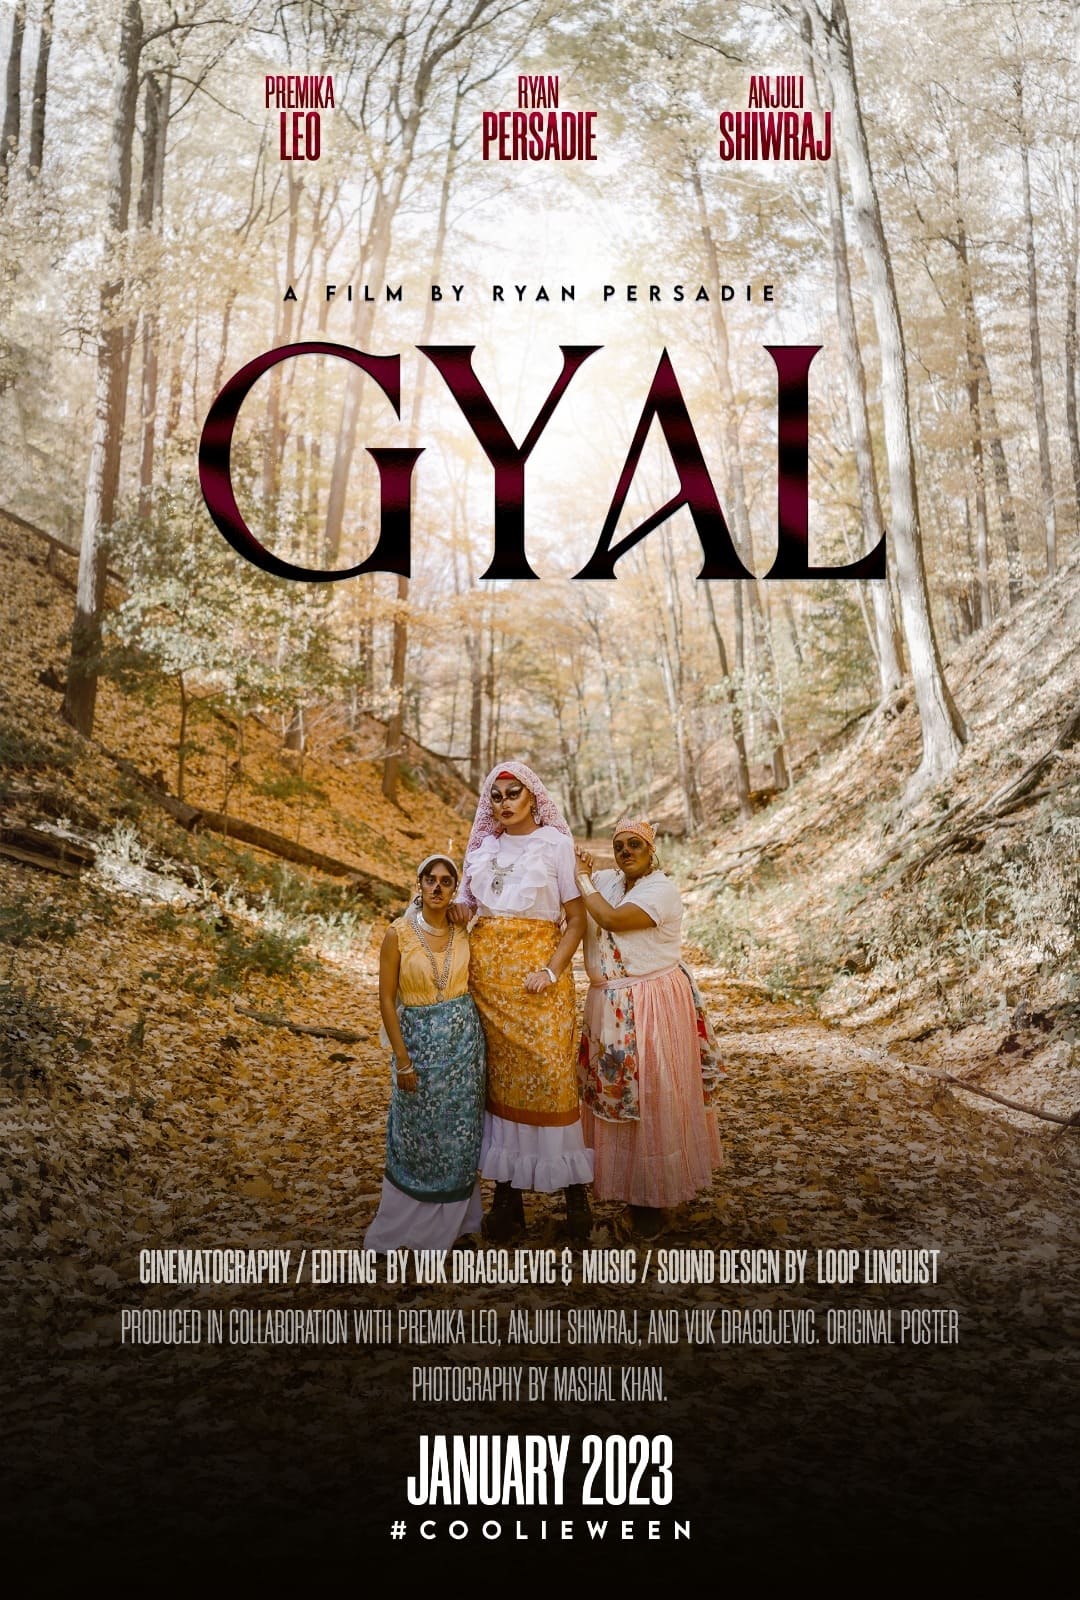 Gyal